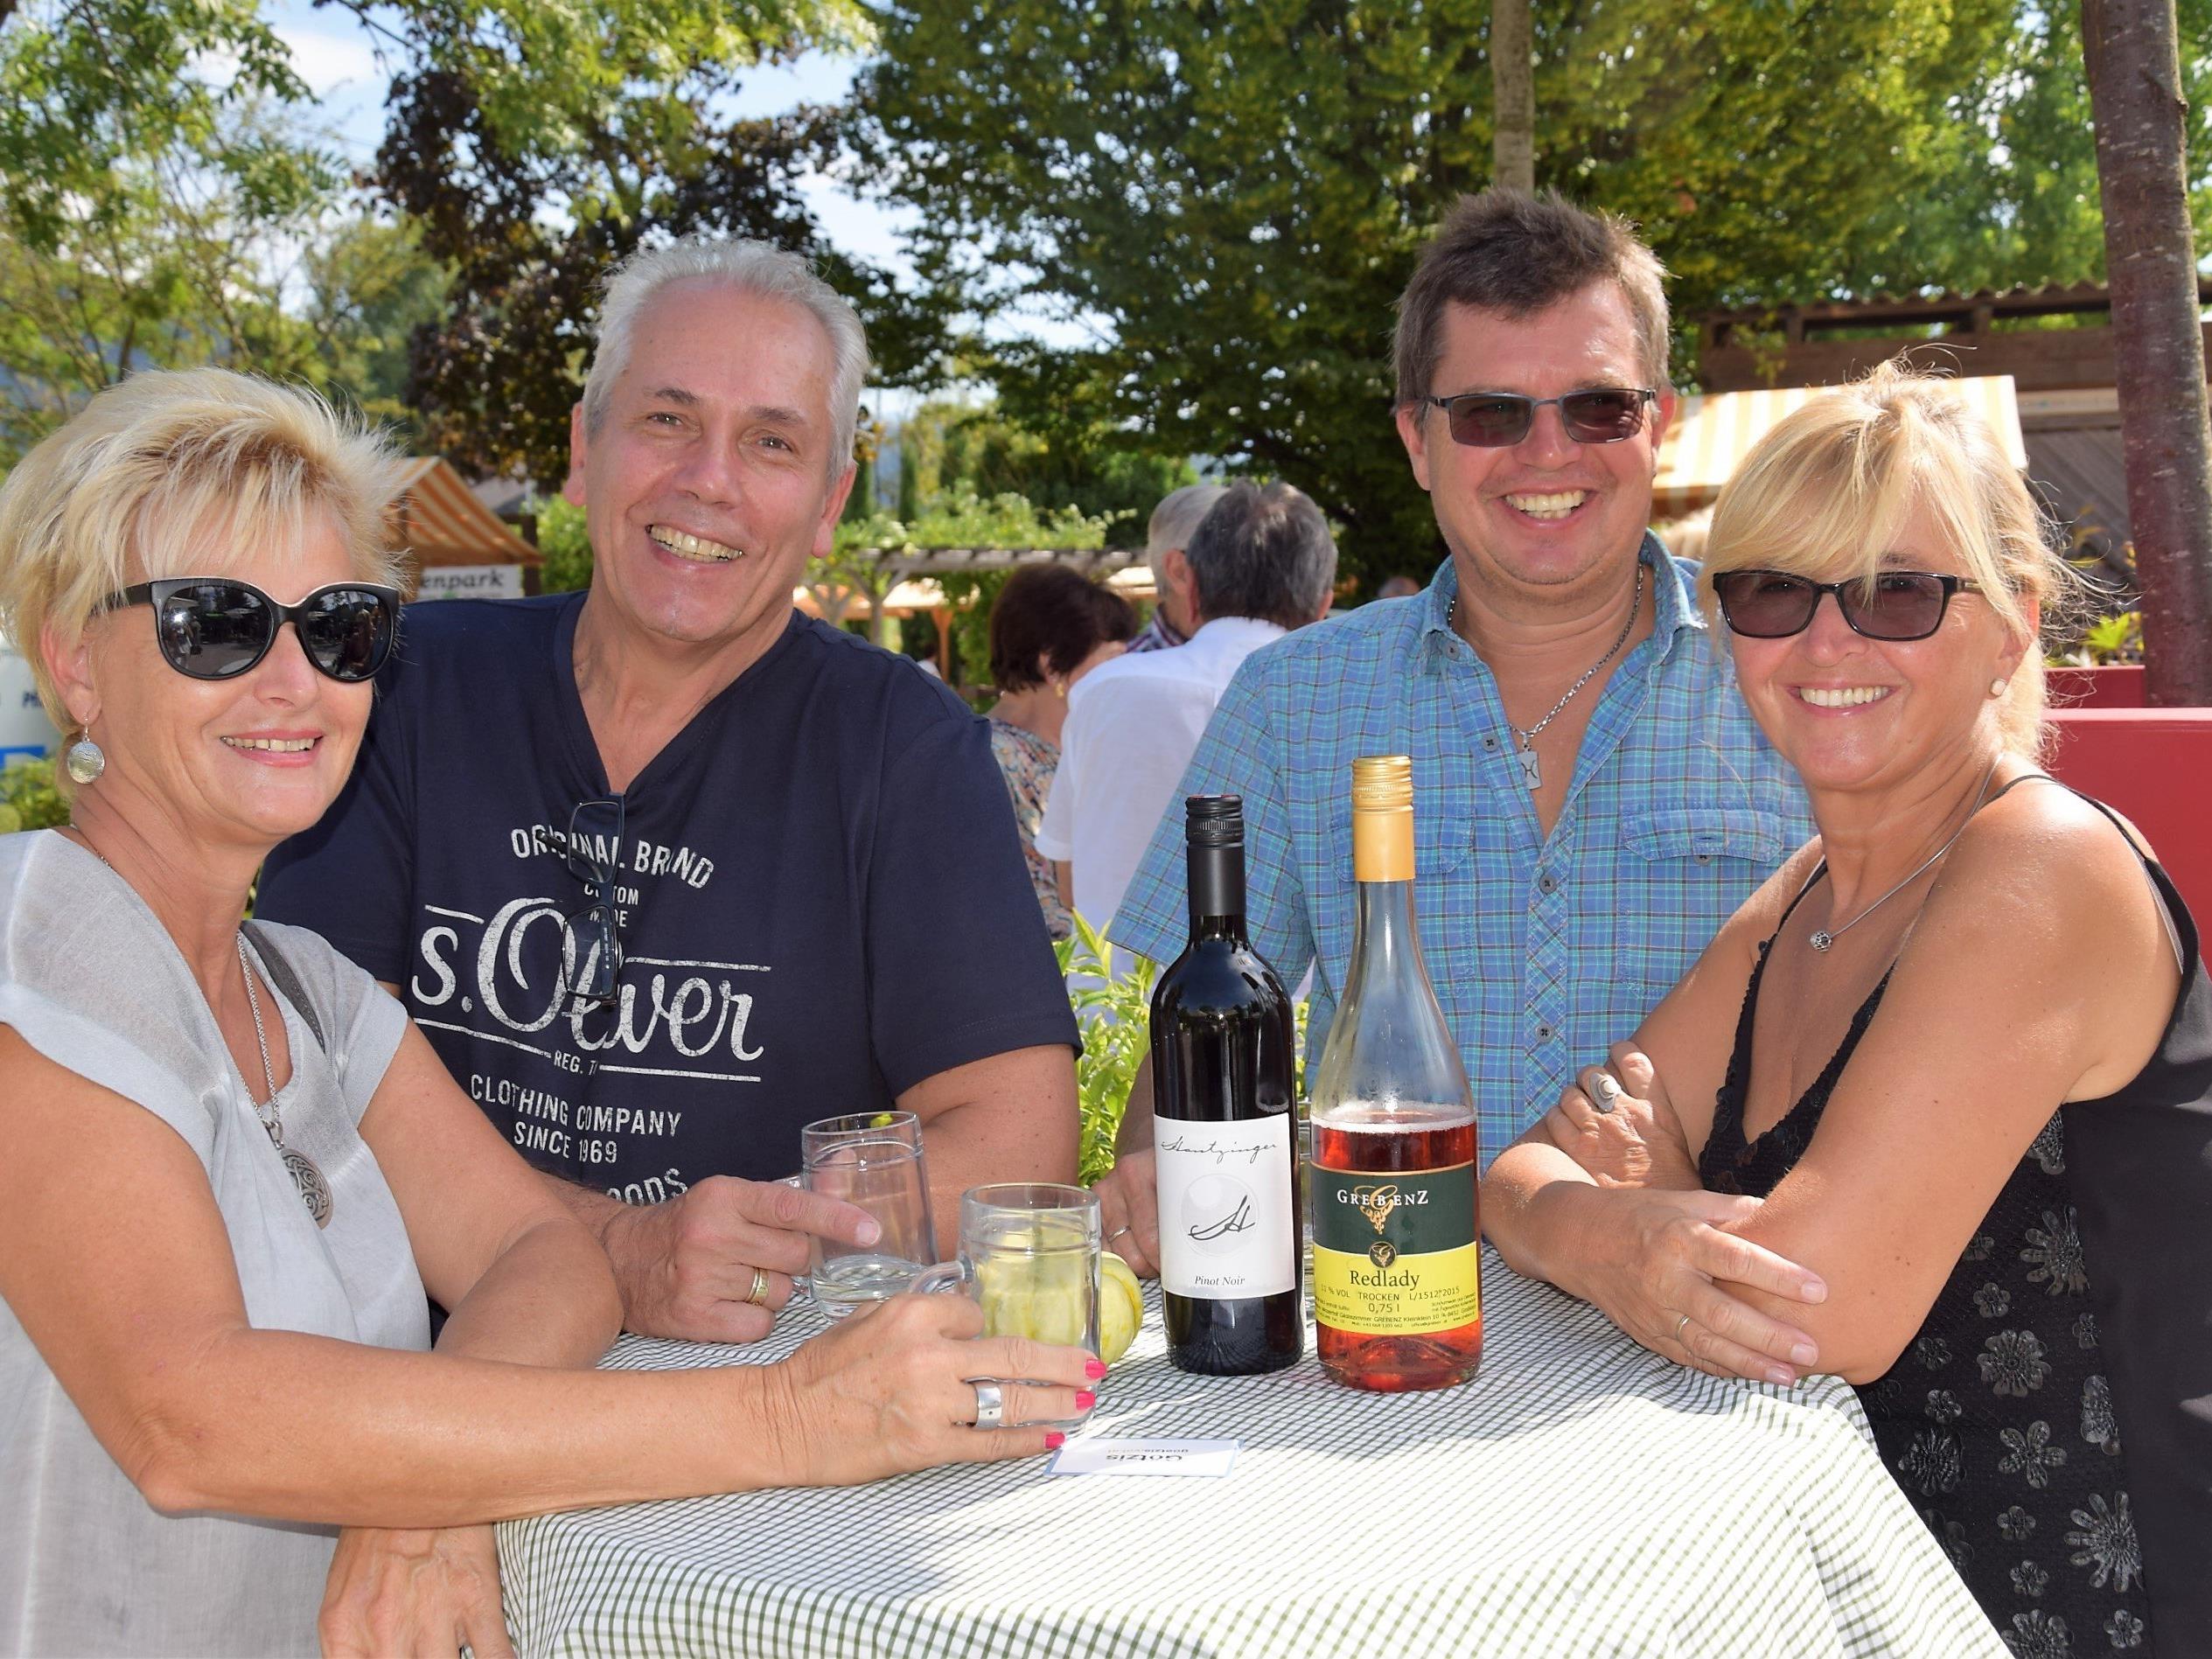 v.l.n.r. Elke, Reinhard, Gerhard und Waltraud genossen einen edlen Wein im Ideenpark amKumma